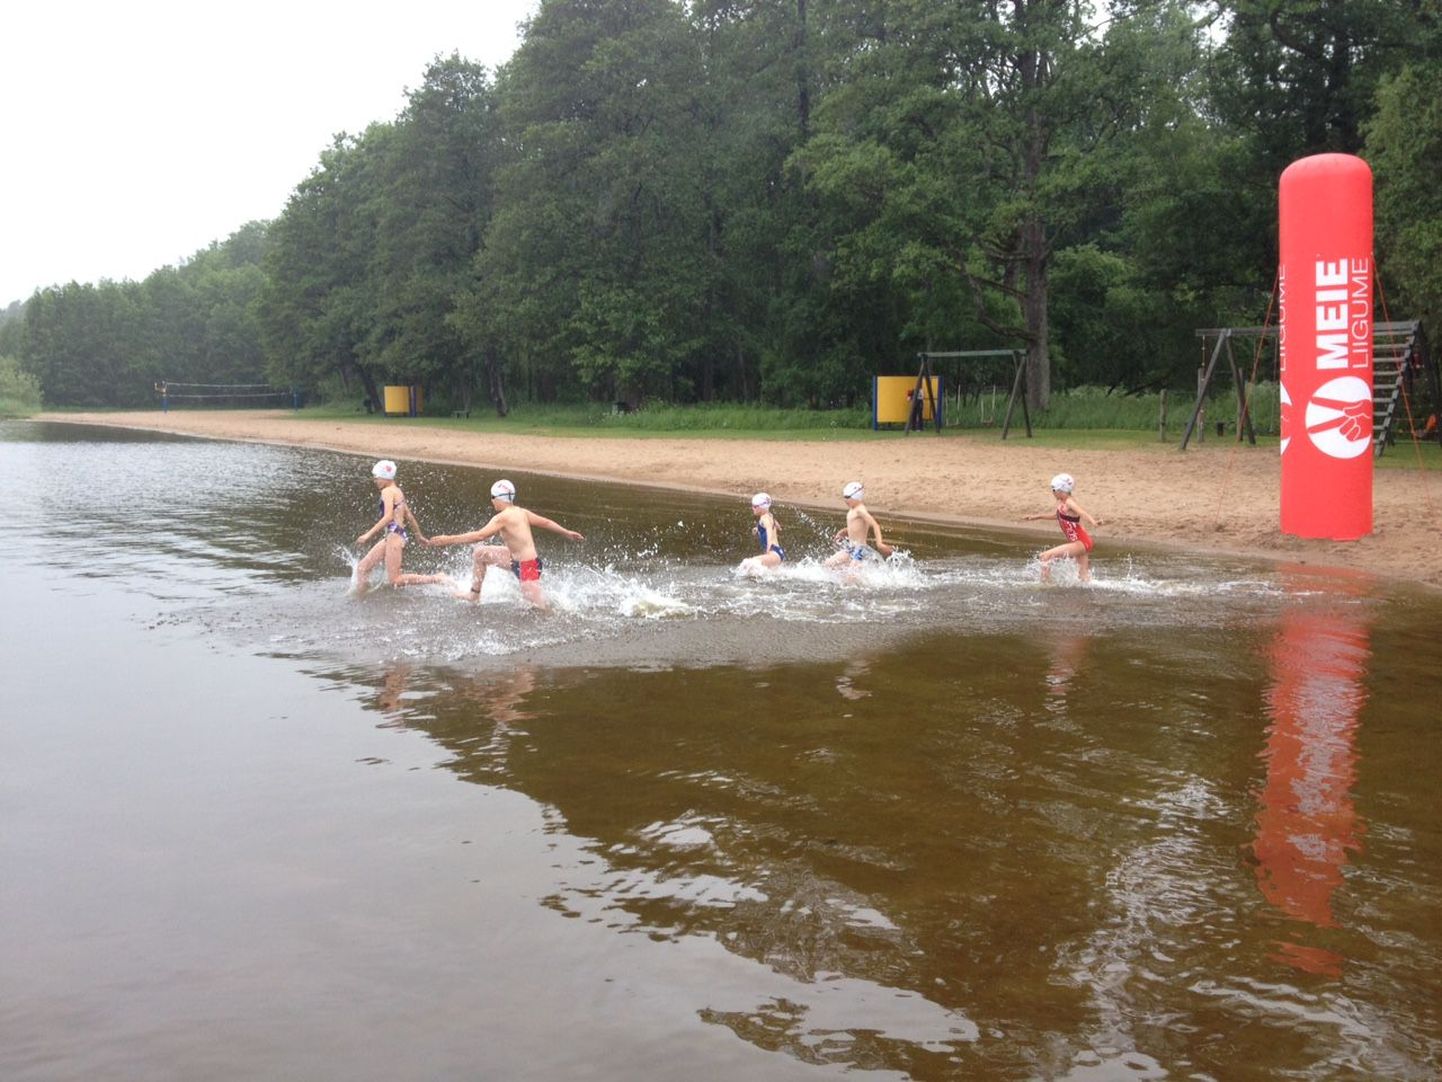 Kuremaa avaveeujumise võistlustel otsustas 16,5-kraadises vees võistelda viis julget last.